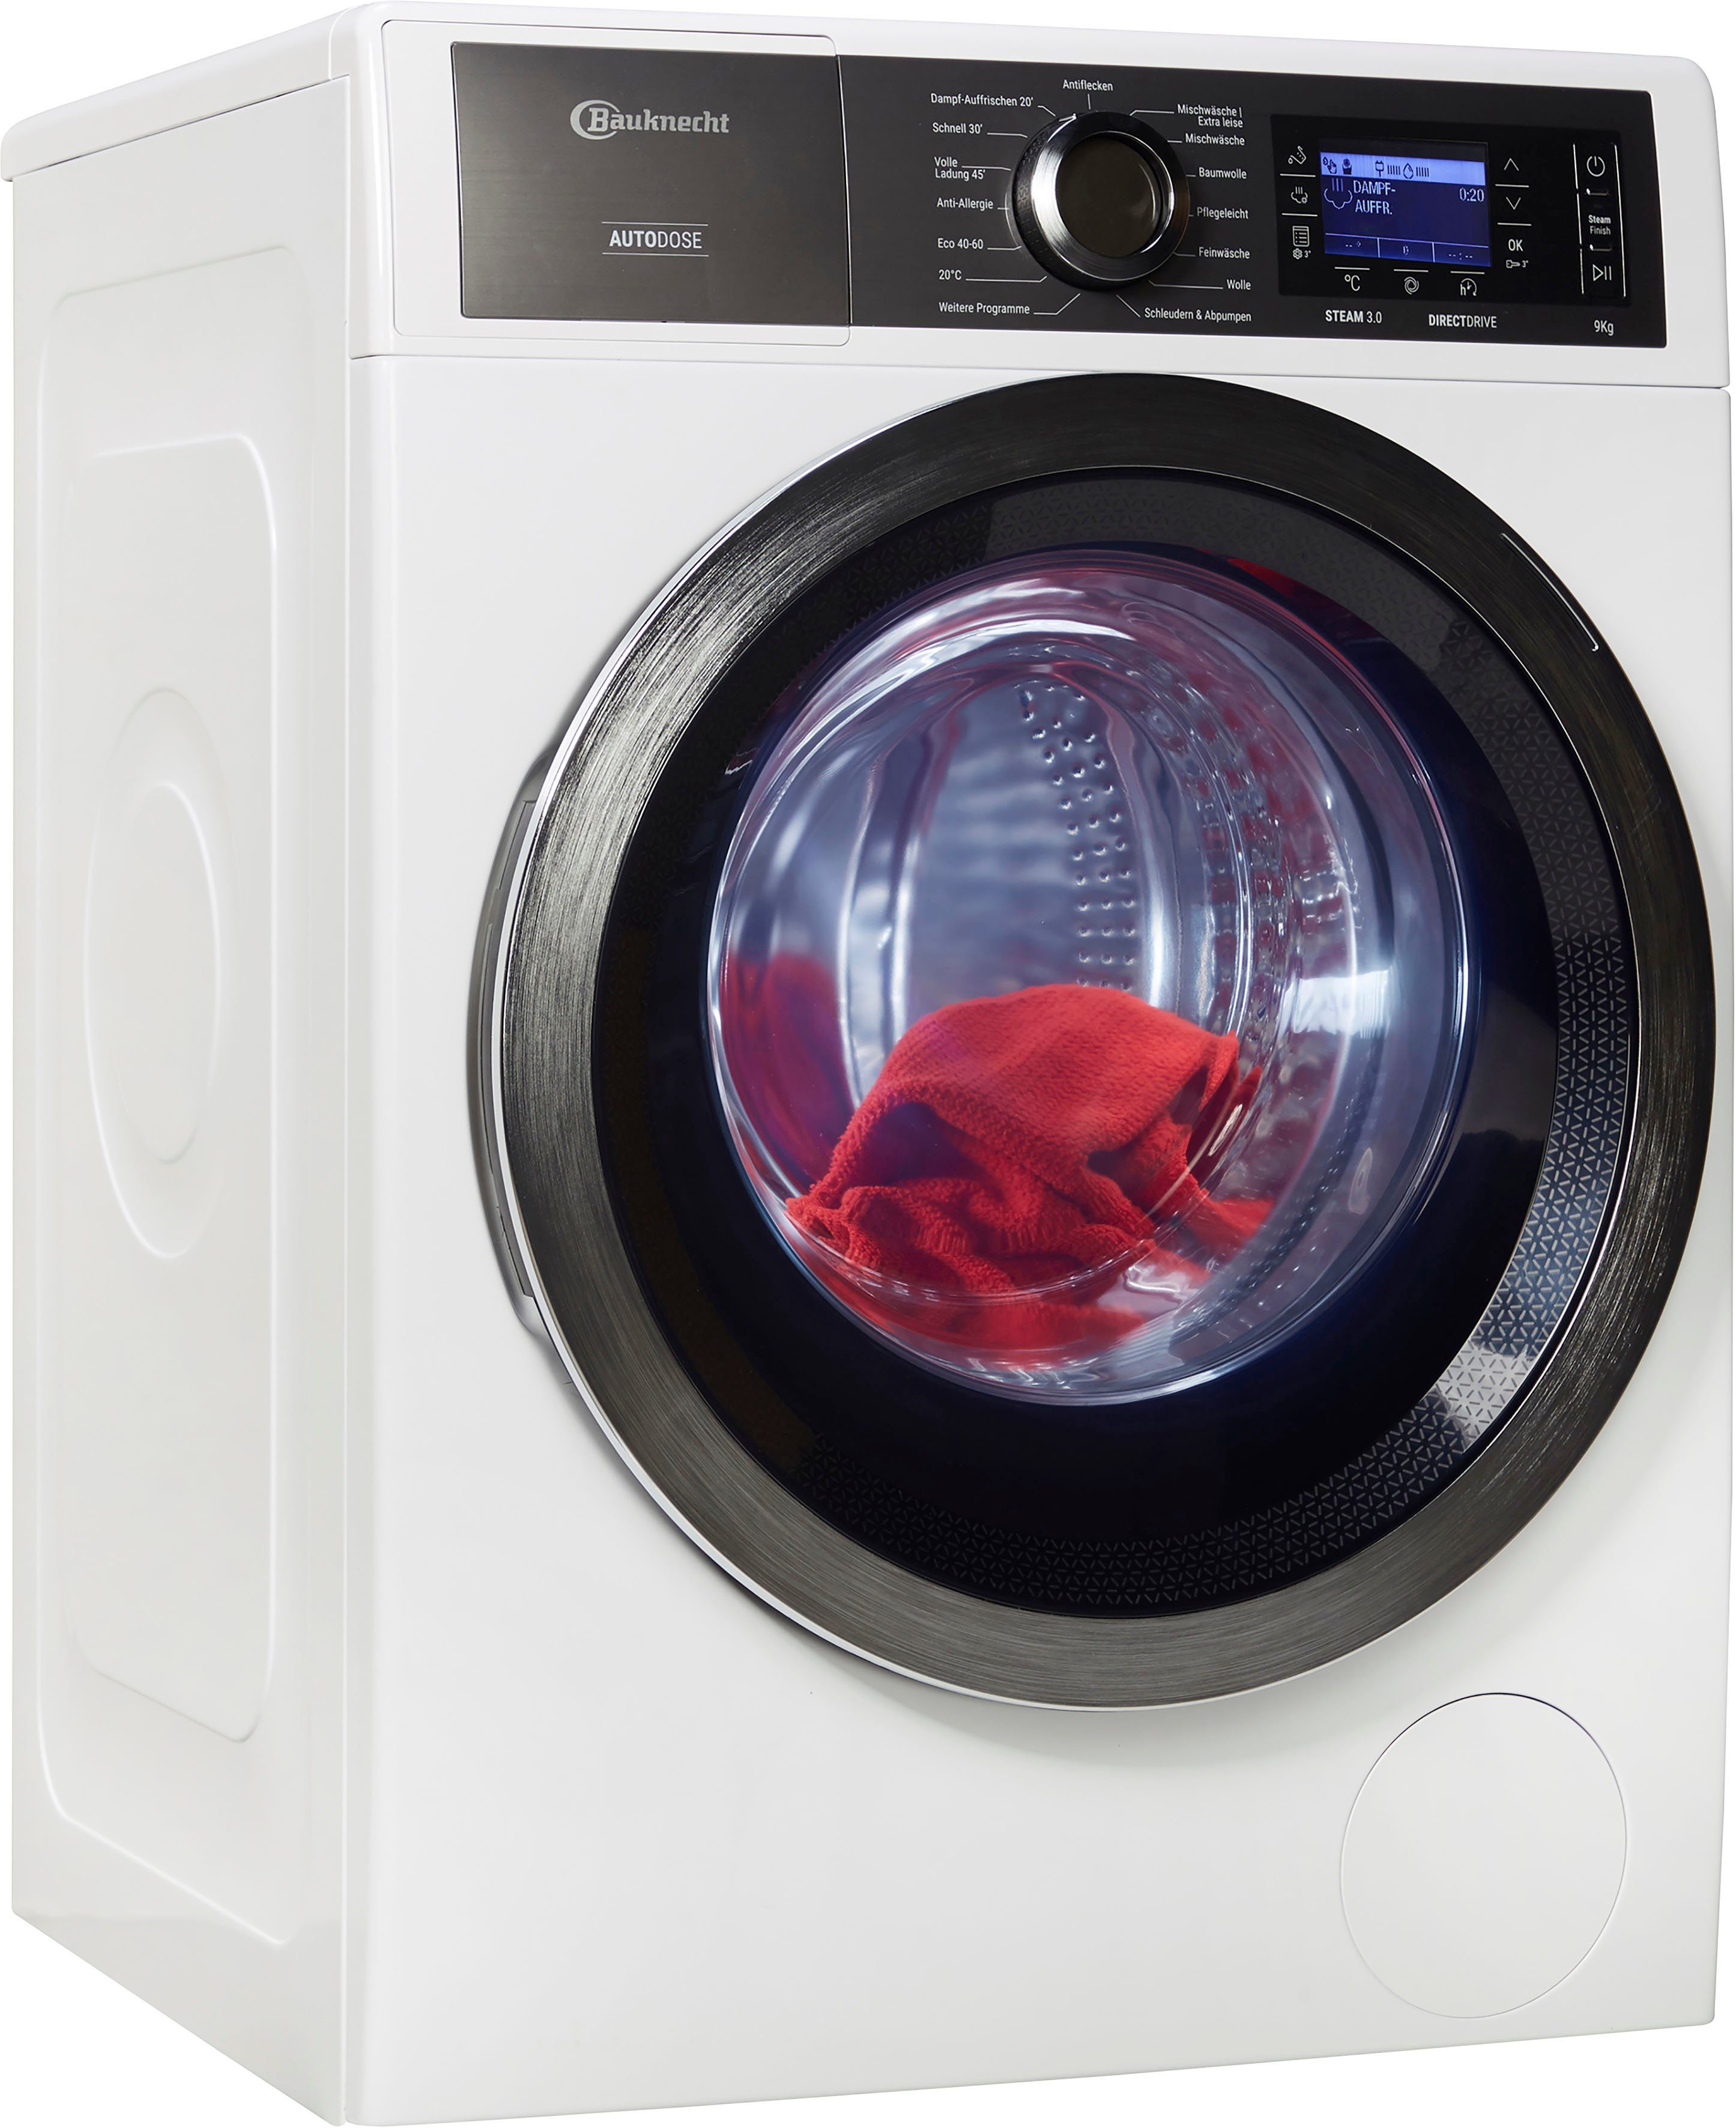 BAUKNECHT Waschmaschine B7 W945WB DE, 9 kg, 1400 U/min online kaufen | OTTO